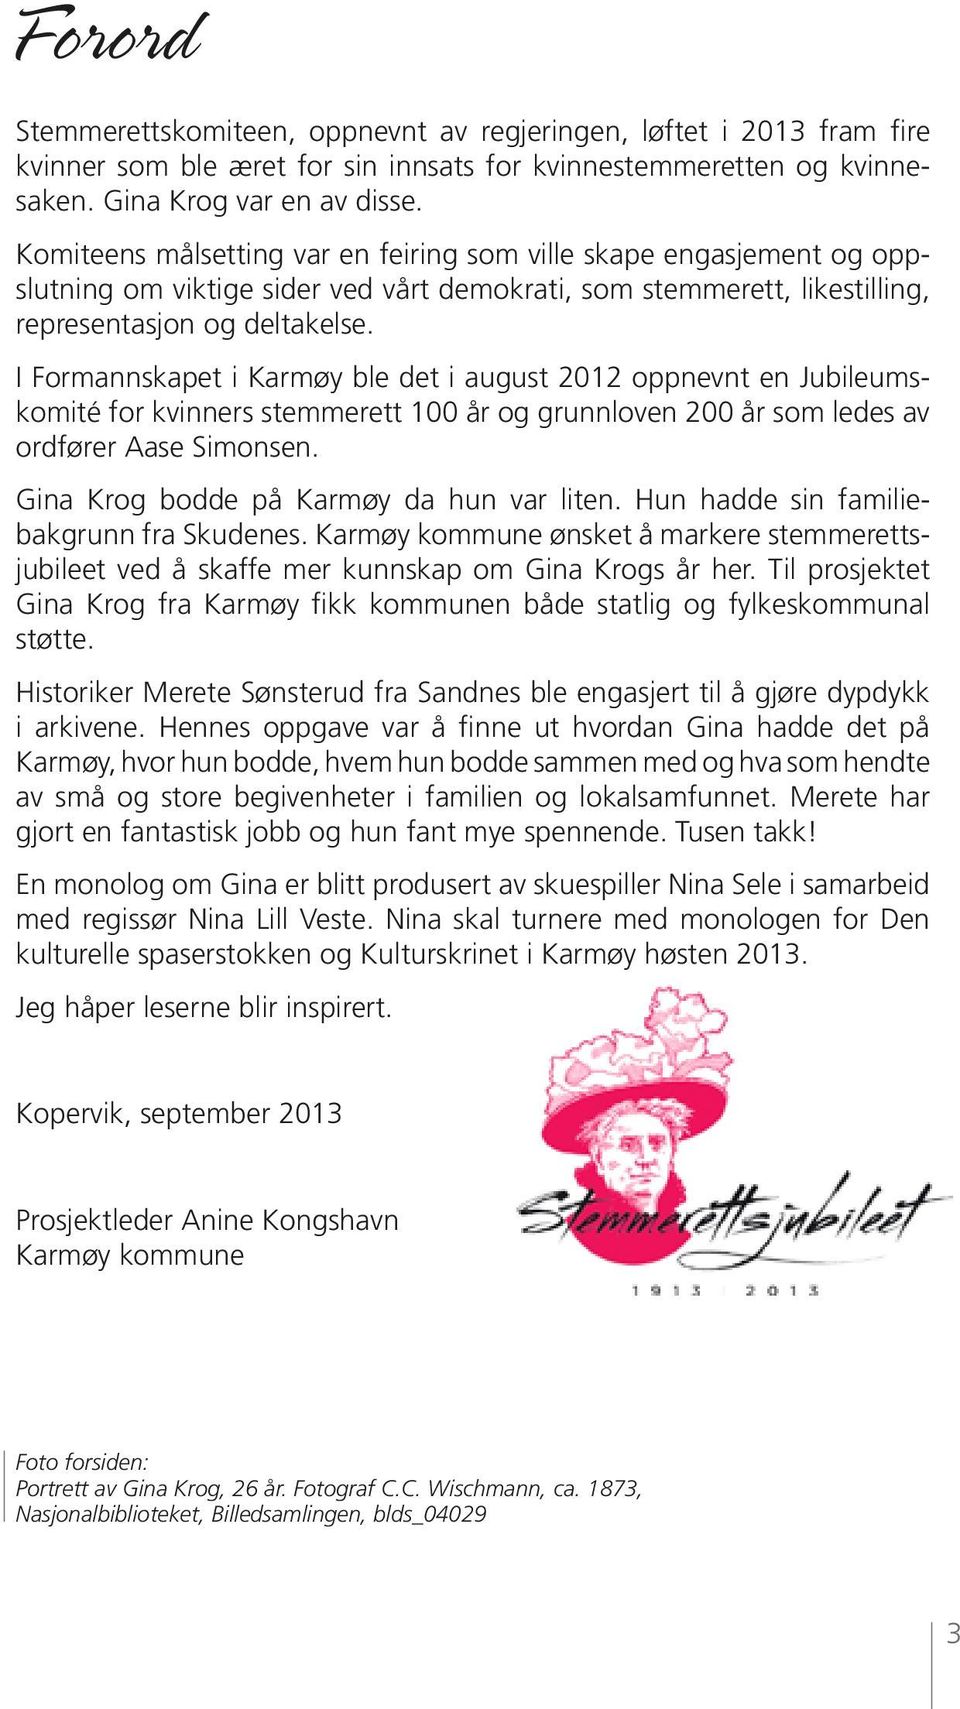 I Formannskapet i Karmøy ble det i august 2012 oppnevnt en Jubileumskomité for kvinners stemmerett 100 år og grunnloven 200 år som ledes av ordfører Aase Simonsen.